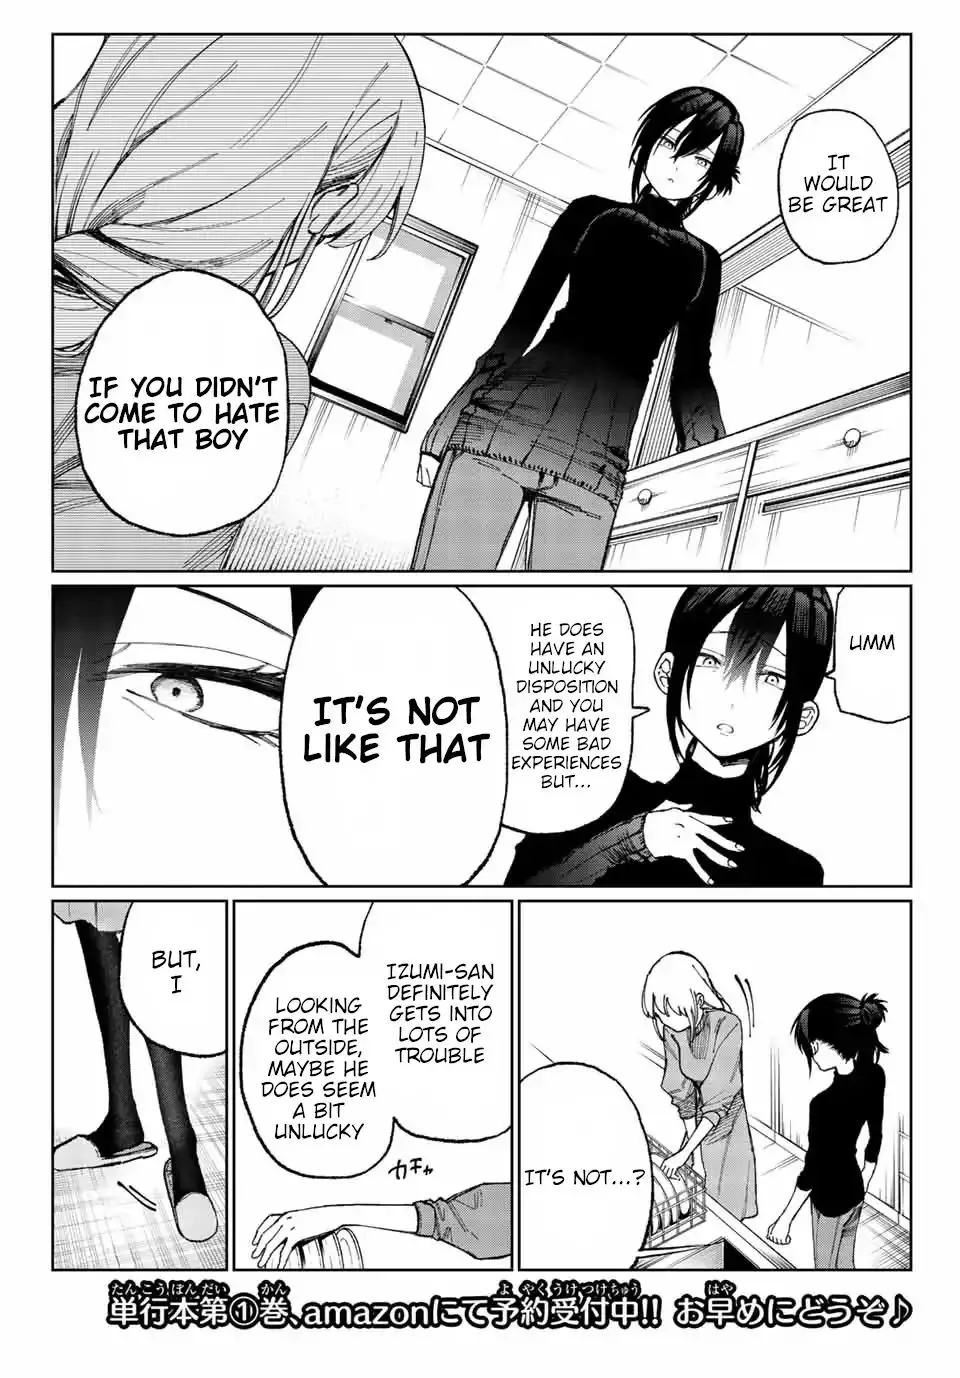 Shikimori's Not Just A Cutie - 17 page 4